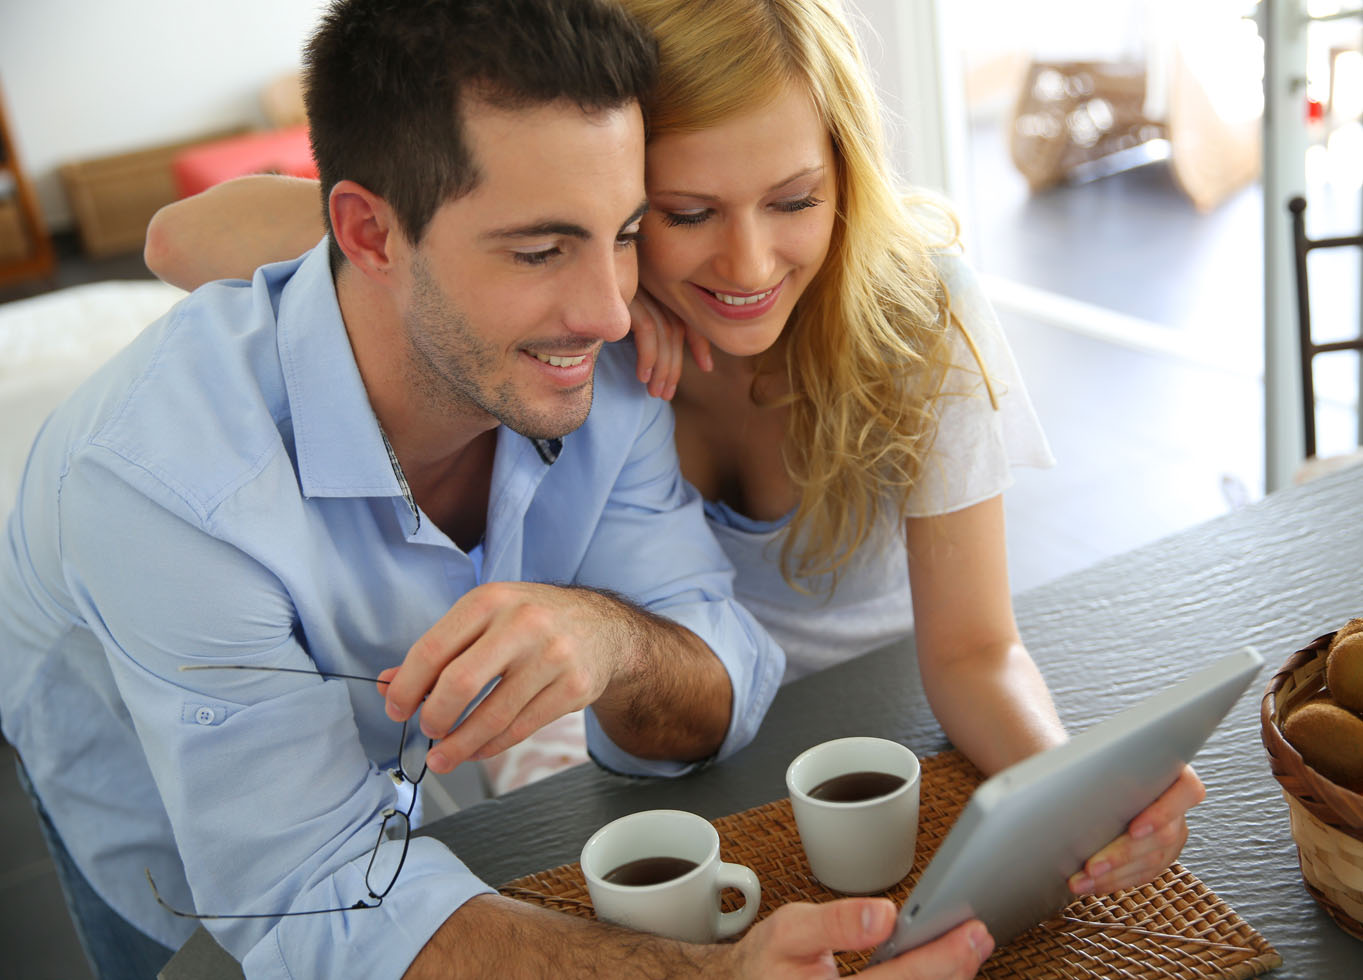 Mutlu bir kadın ve erkek tabletle online alışveriş yapıyor